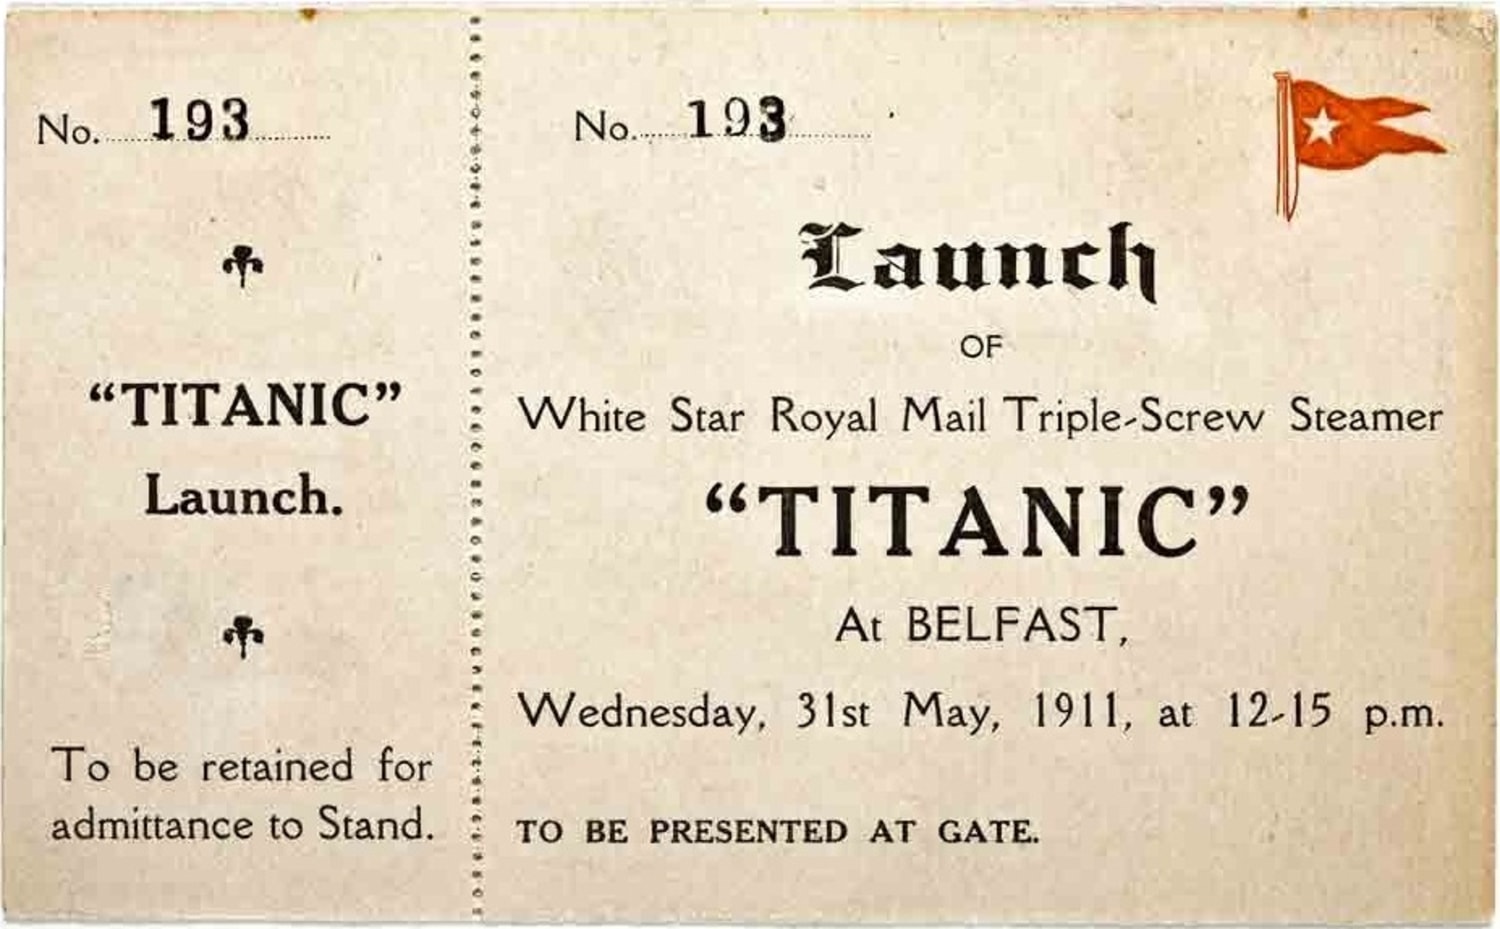 Unused Titanic ticket on sale